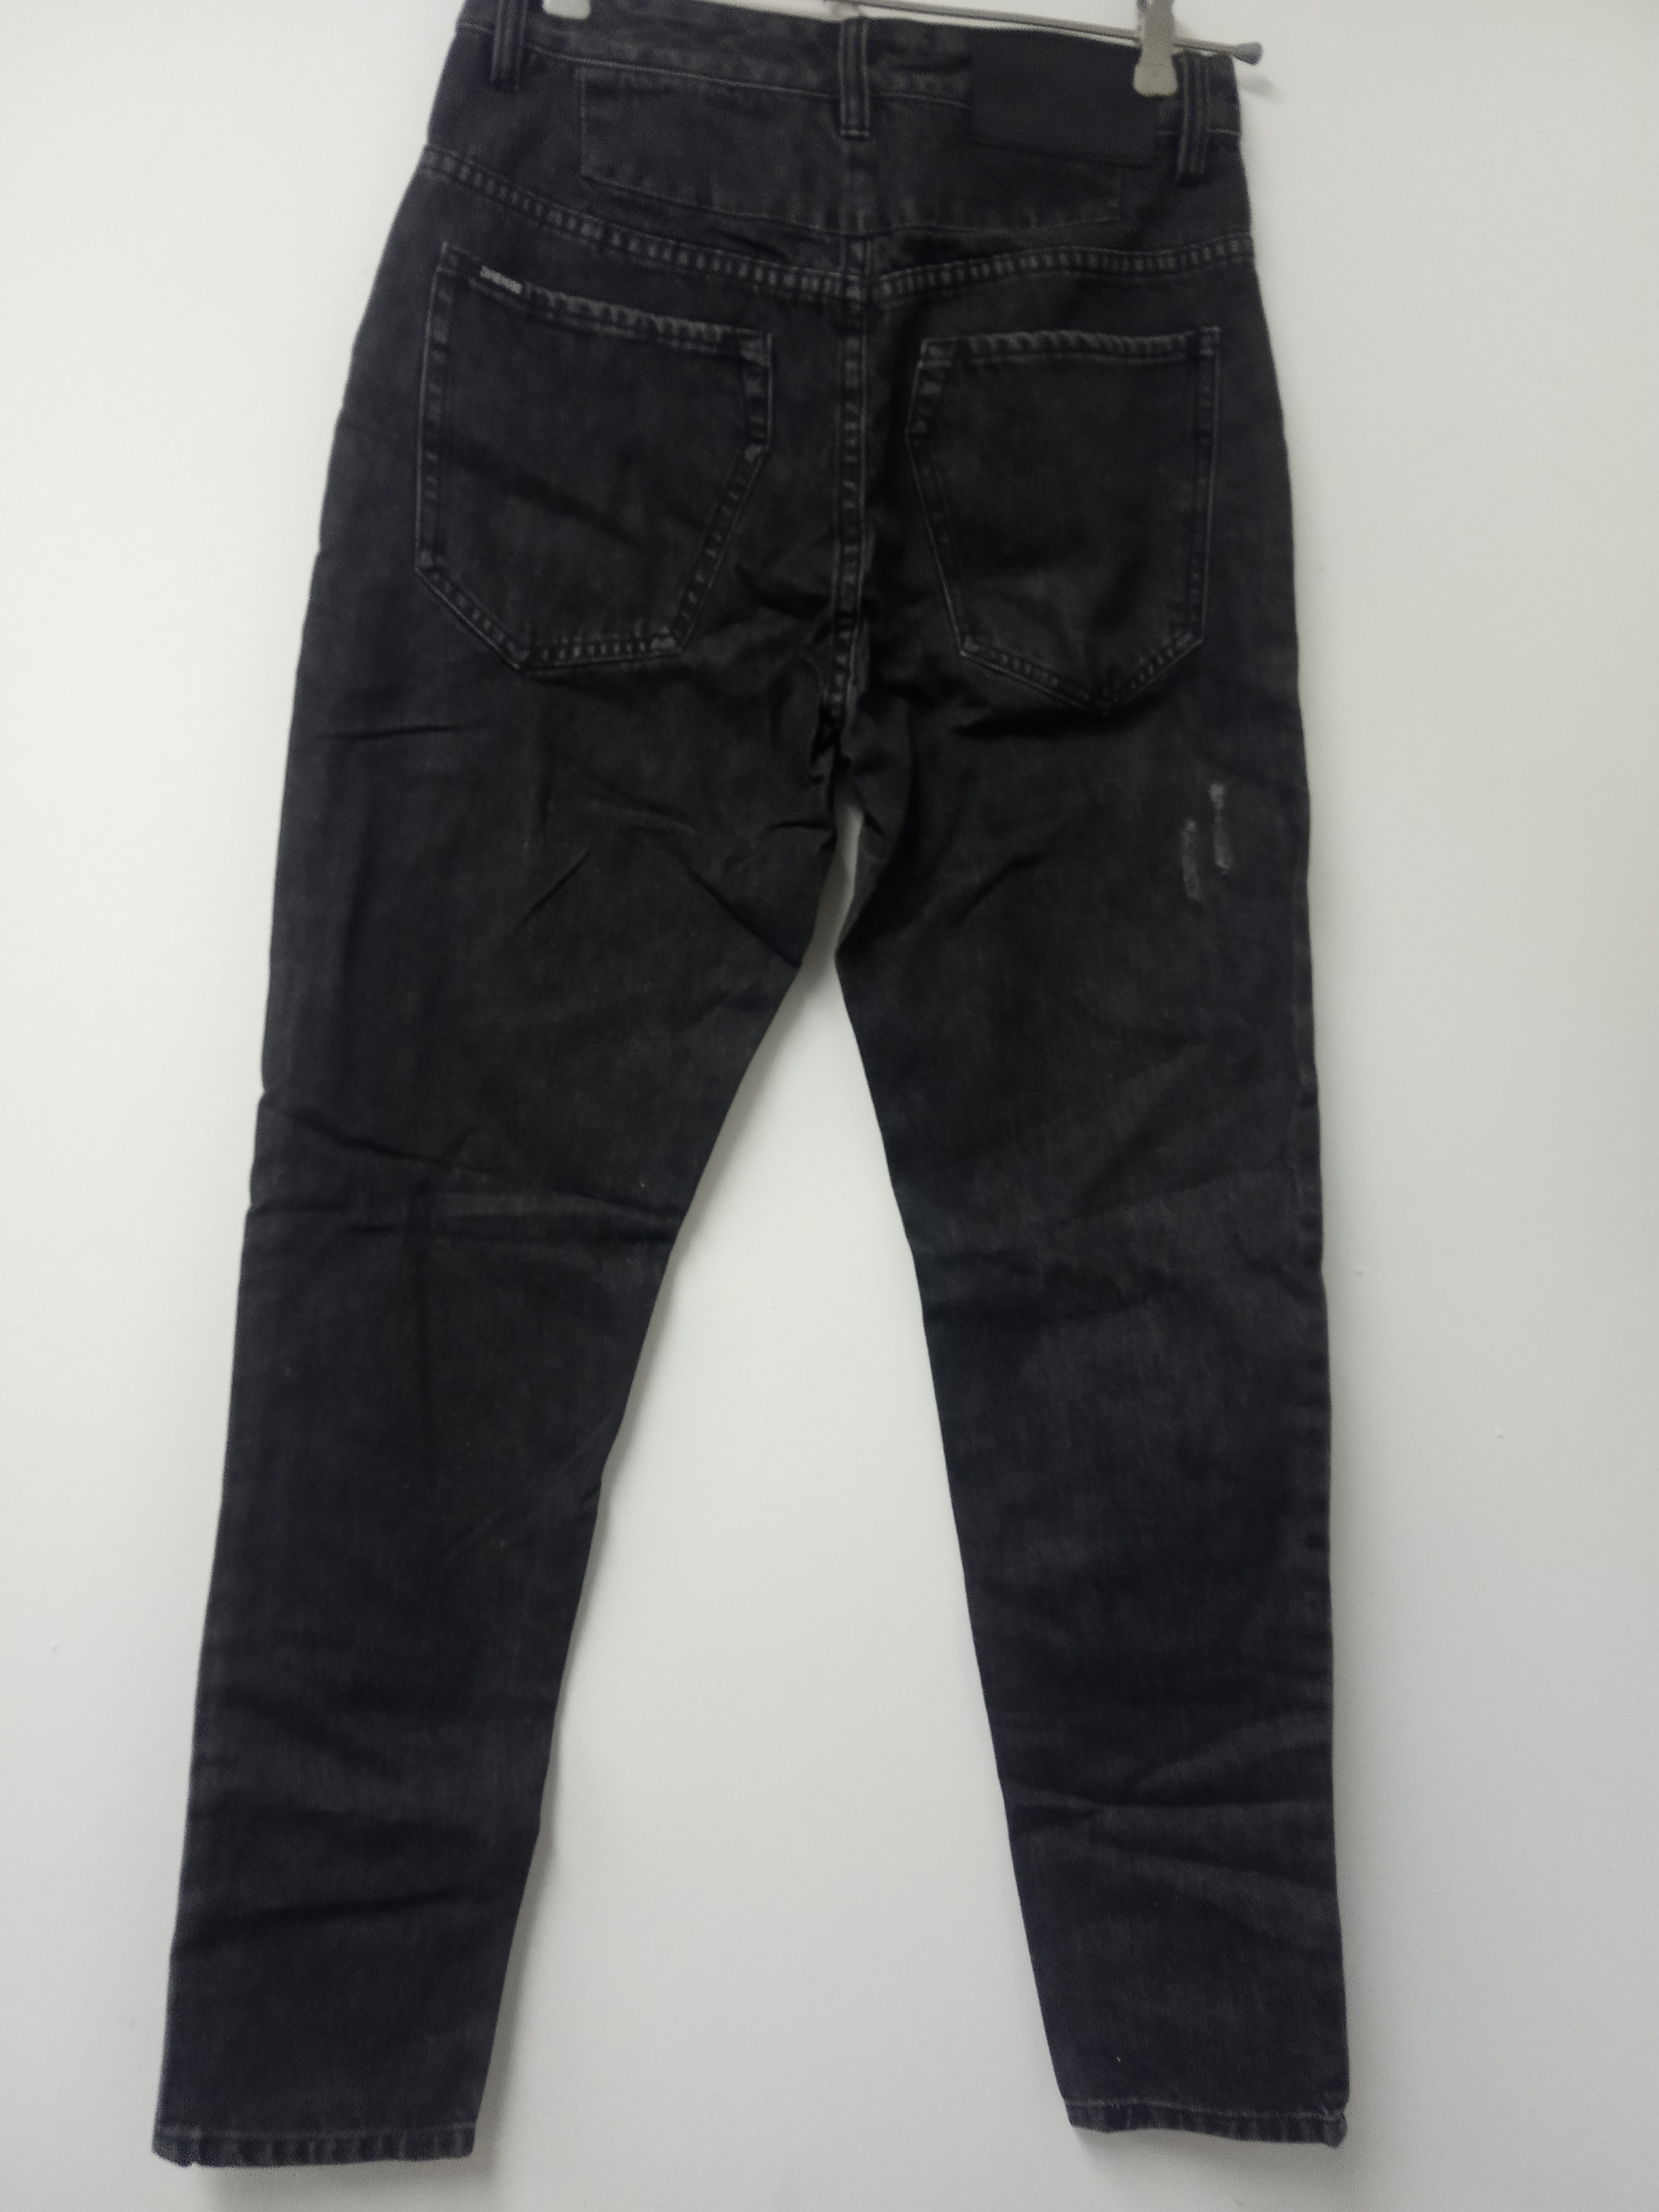 תמונה 3 ,ג'ינס zanrobe מידה 29 למכירה בתל אביב  ביגוד ואביזרים  ג'ינסים ומכנסיים